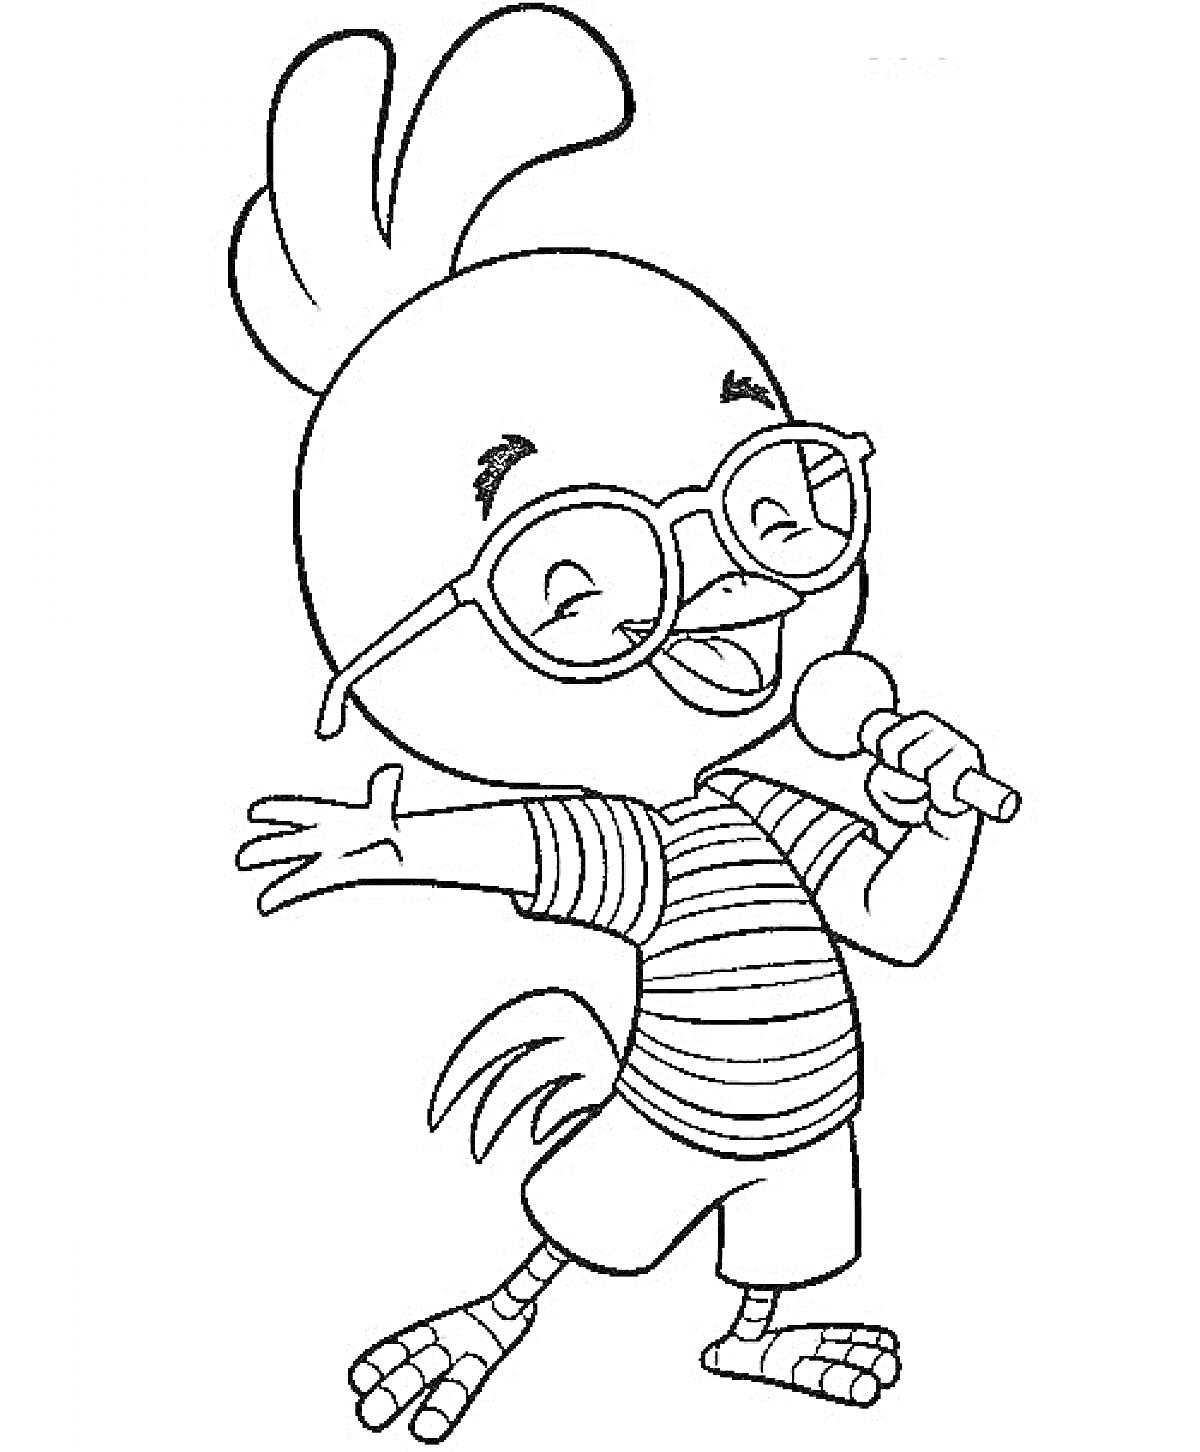 Цыпленок в очках с микрофоном, стоящий на одной ноге в полосатой футболке